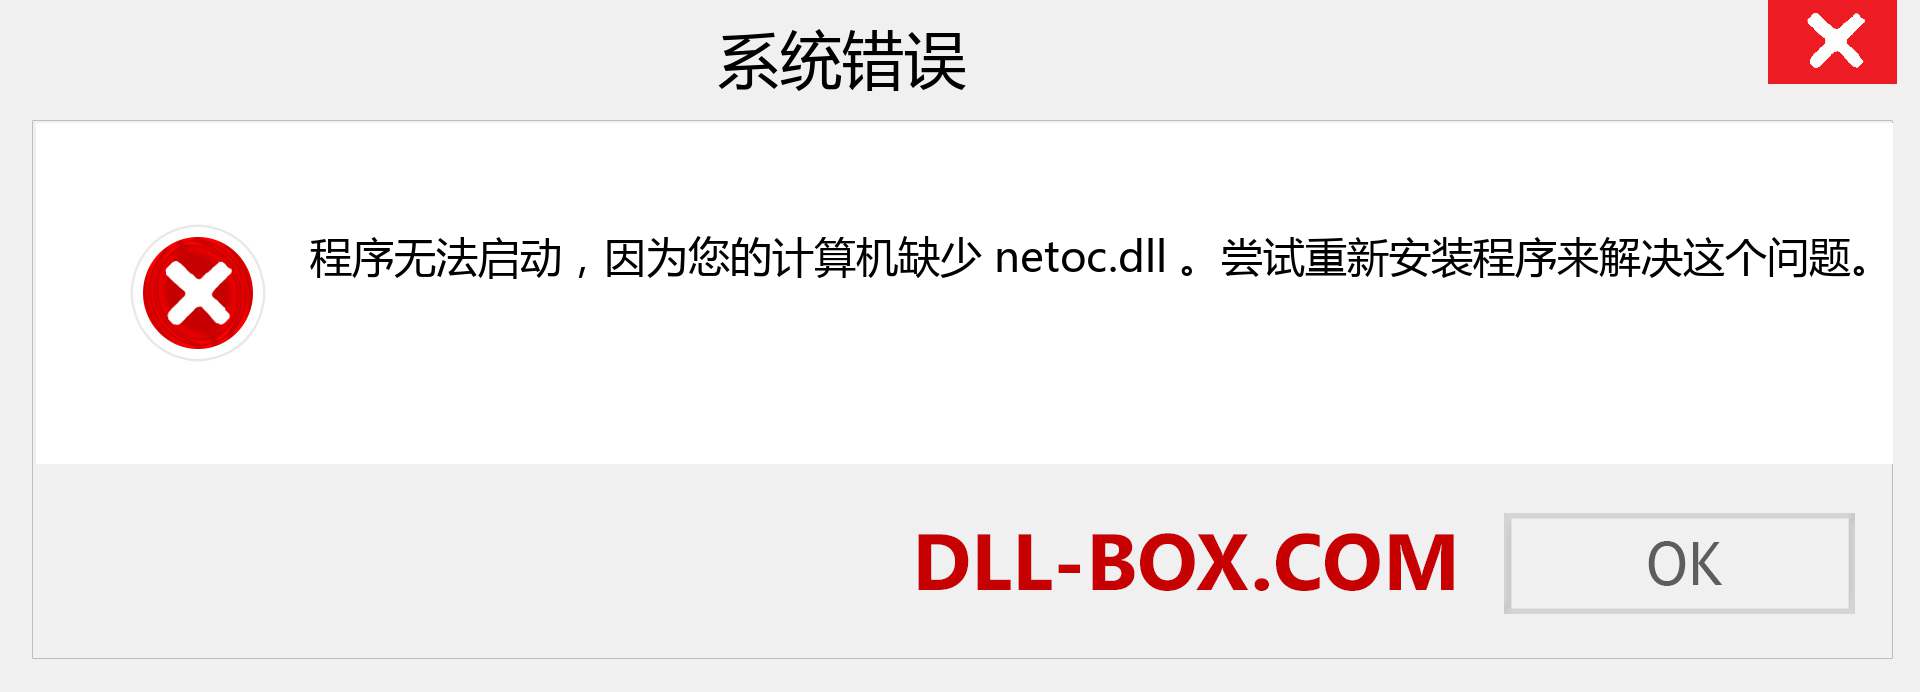 netoc.dll 文件丢失？。 适用于 Windows 7、8、10 的下载 - 修复 Windows、照片、图像上的 netoc dll 丢失错误